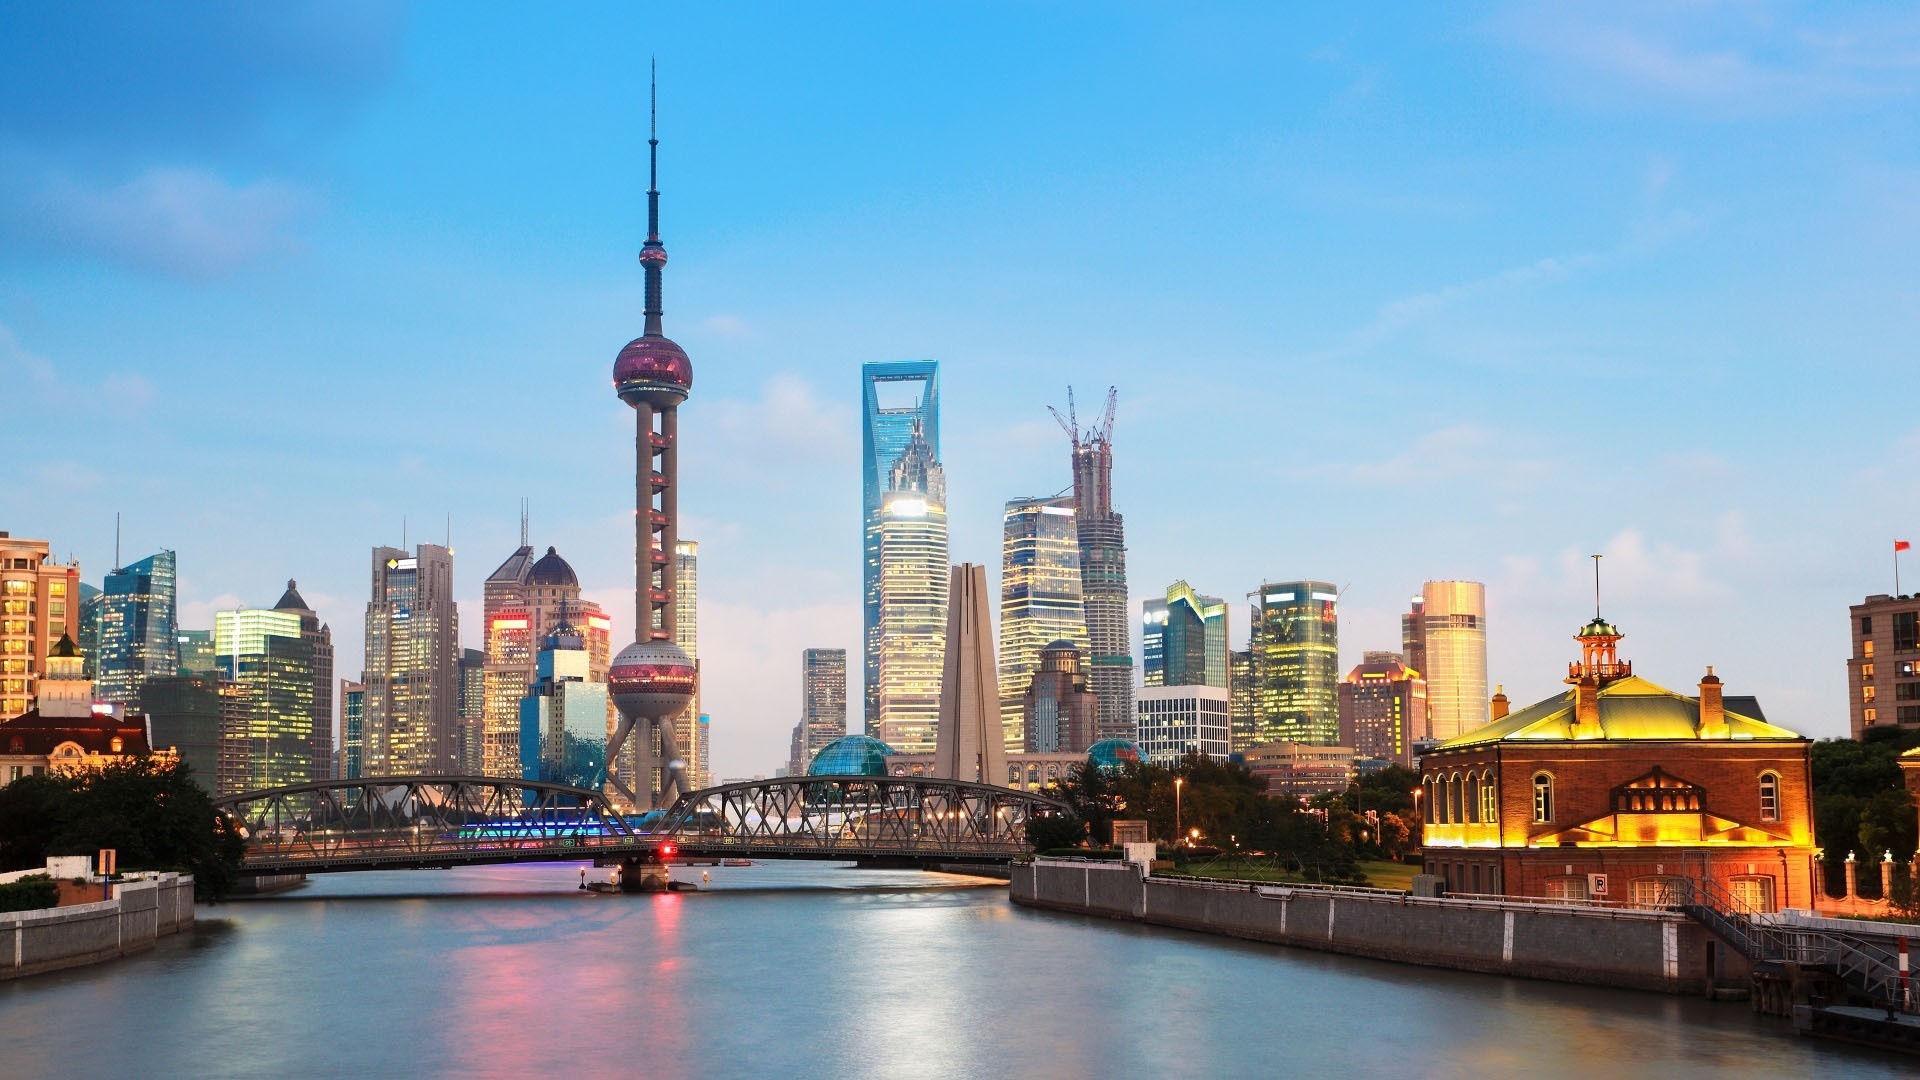 Shanghai World Financial Center, Stunning wallpapers, Shanghai skyline, Beautiful city view, 1920x1080 Full HD Desktop